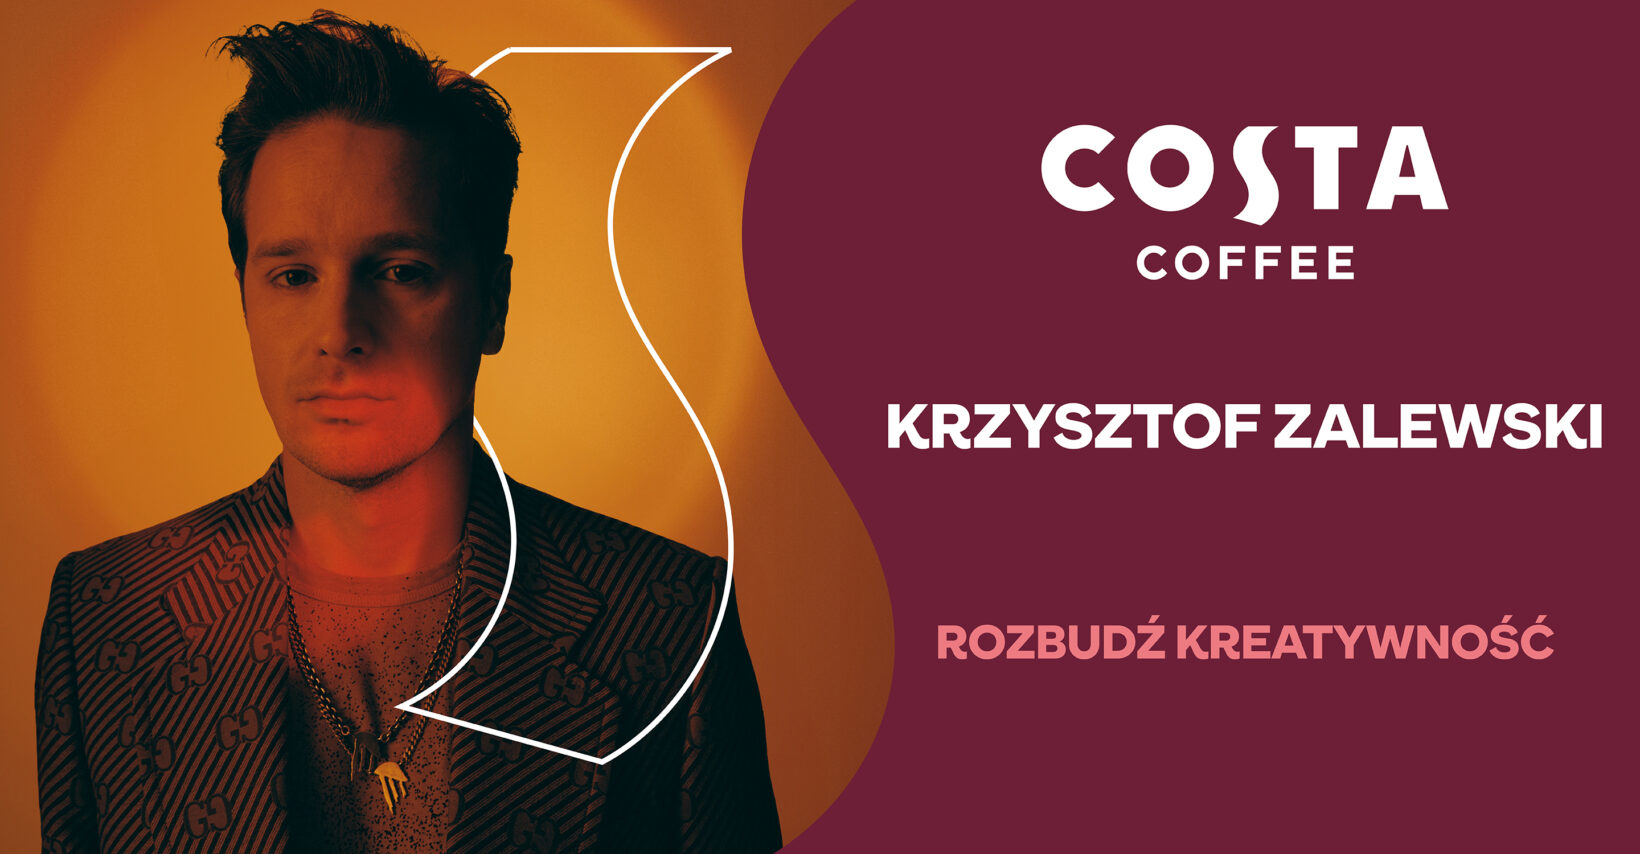 Costa Coffee i Krzysztof Zalewski rozbudzają kreatywność we wspólnym projekcie